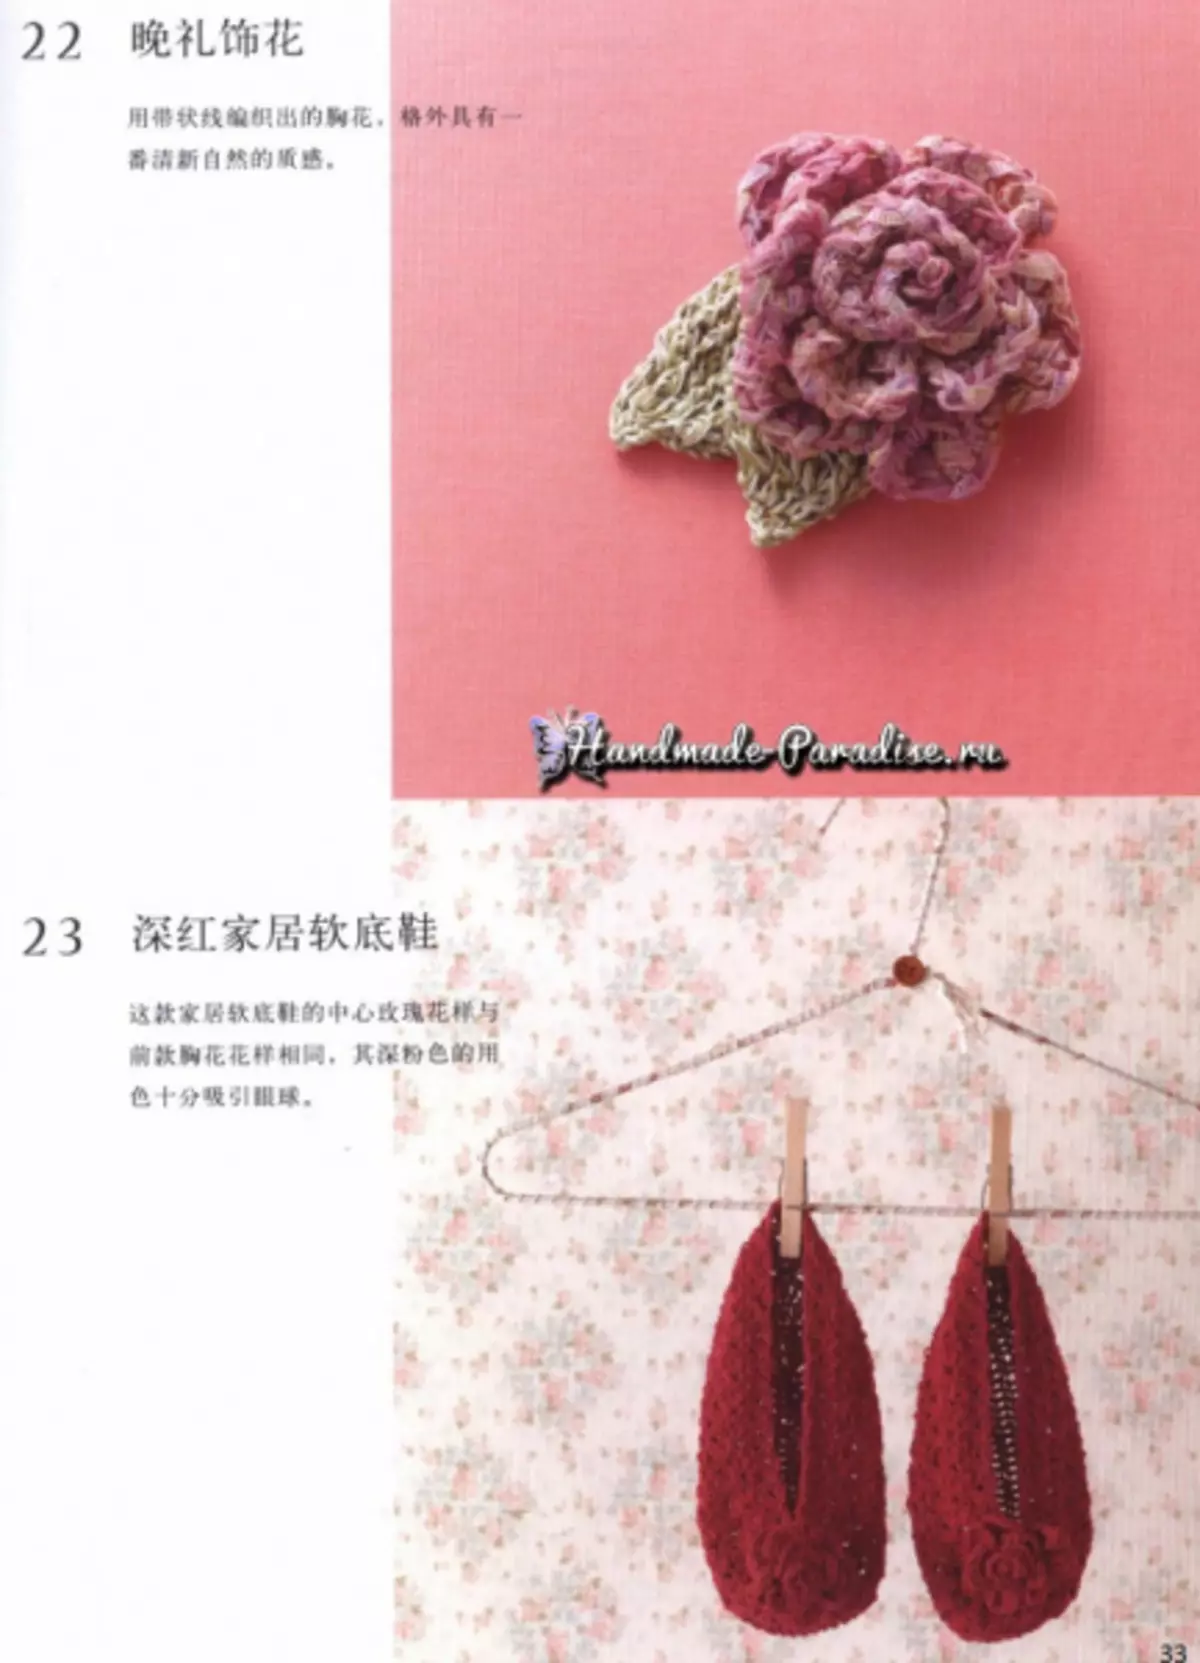 Rozes tamborē. Japāņu žurnāls ar shēmām